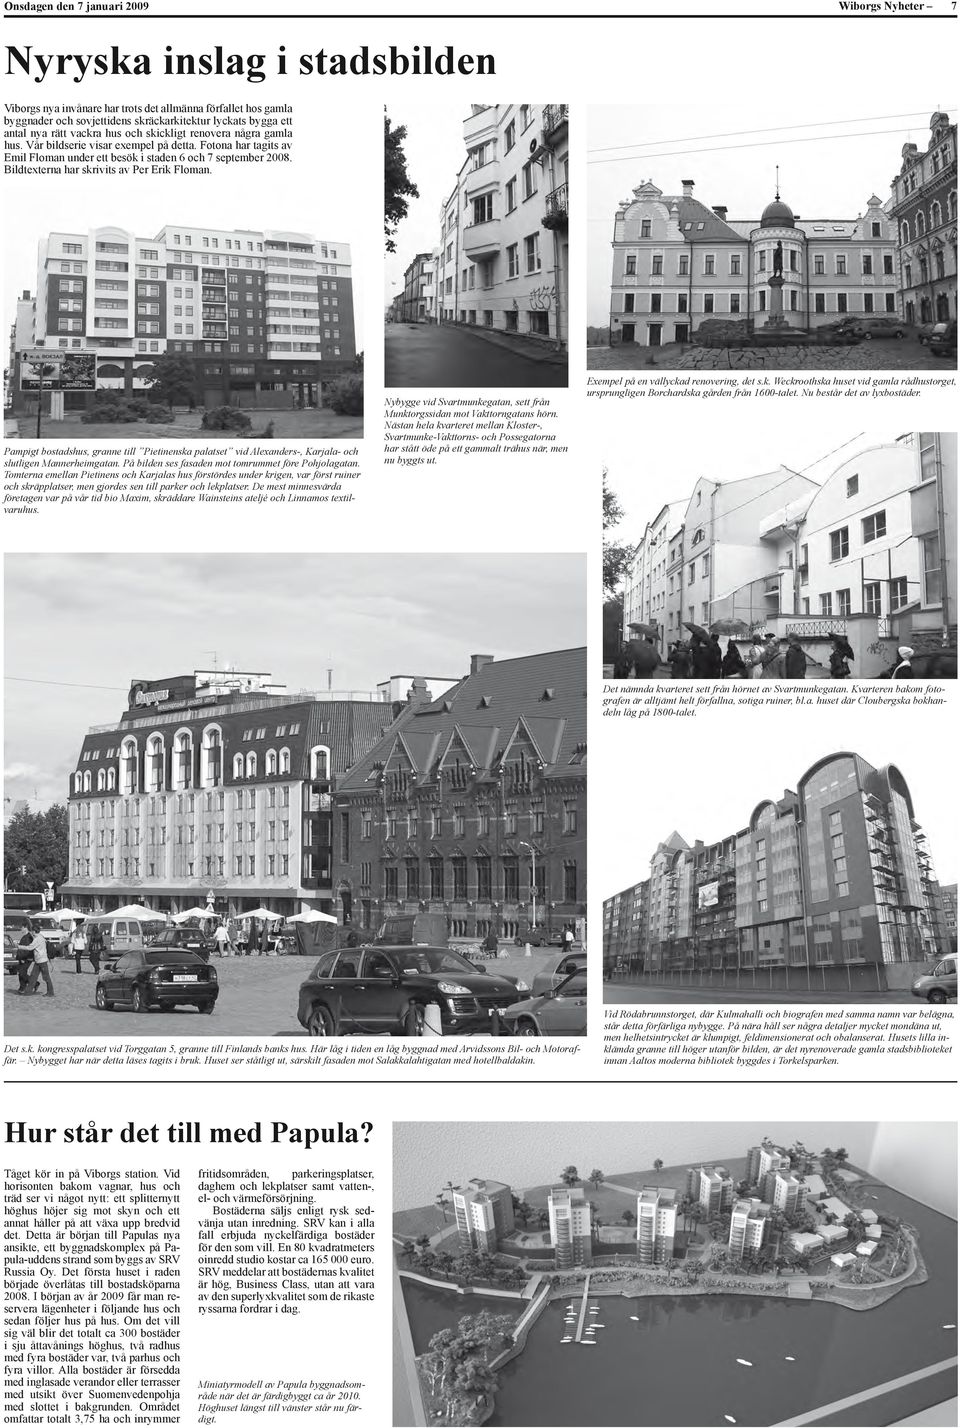 Bildtexterna har skrivits av Per Erik Floman. Pampigt bostadshus, granne till Pietinenska palatset vid Alexanders-, Karjala- och slutligen Mannerheimgatan.